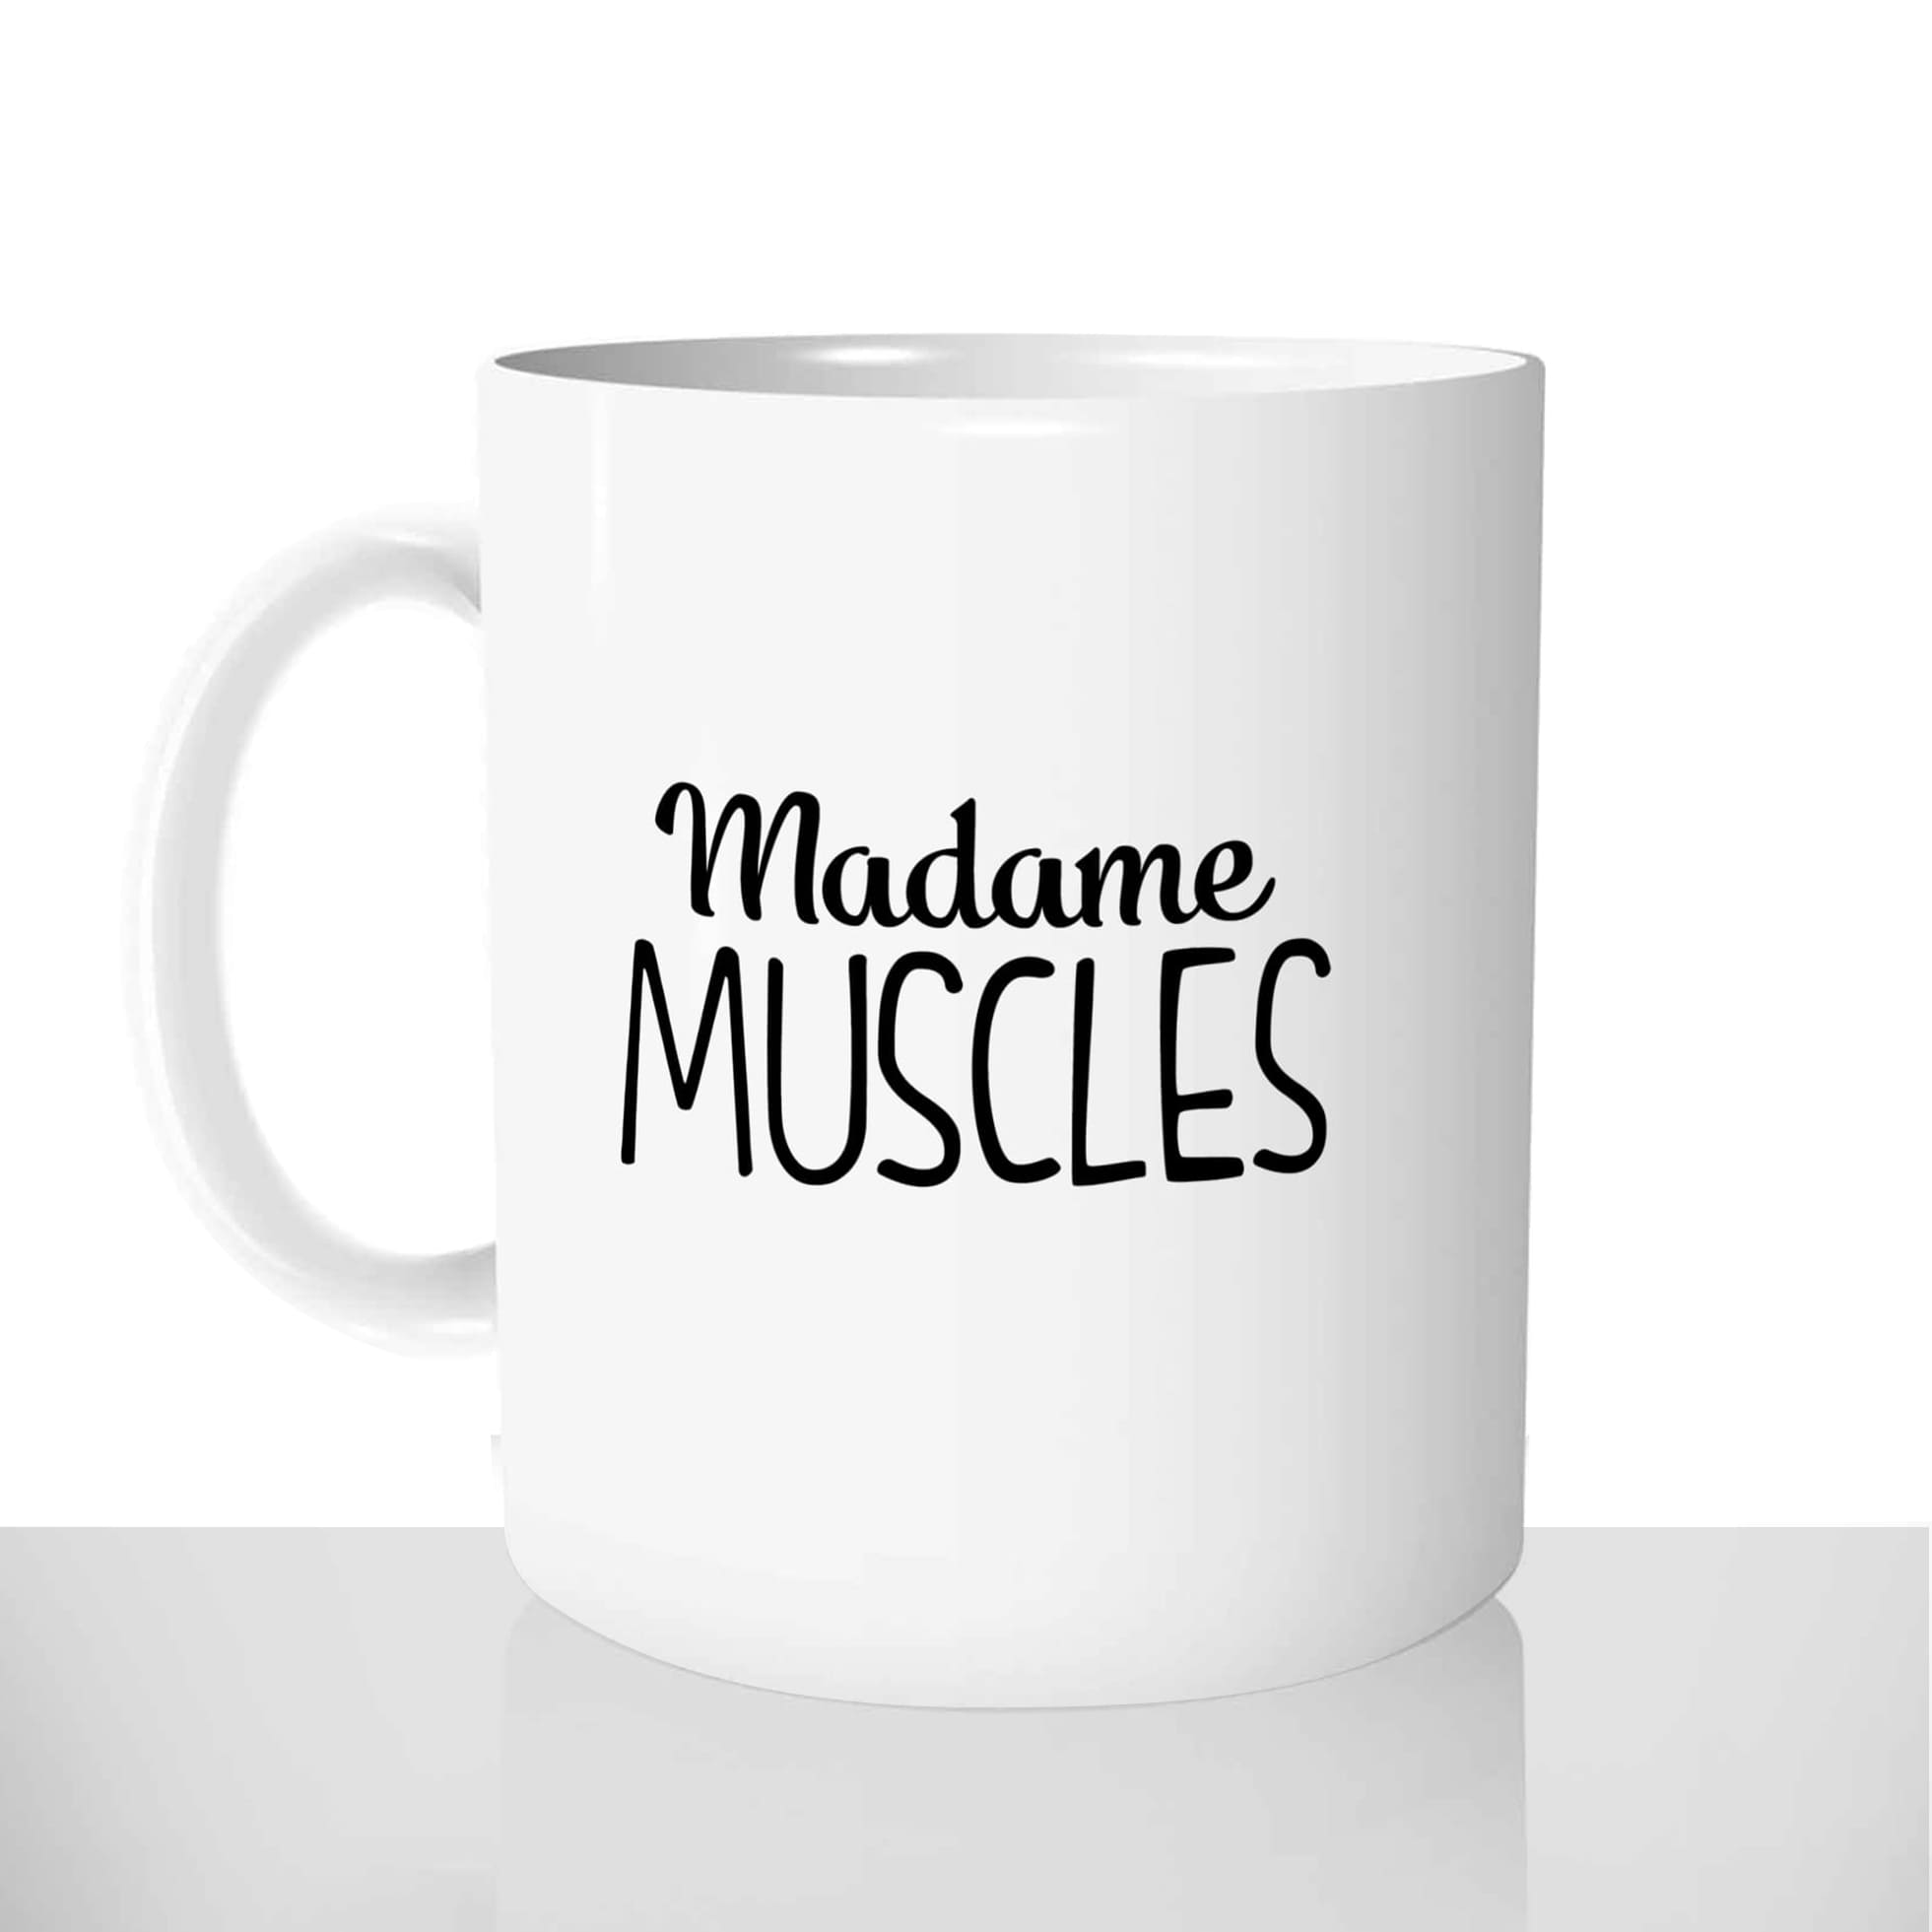 mug classique en céramique 11oz personnalisé personnalisation photo madame muscles collegue copine personnalisable offrir cadeau chou